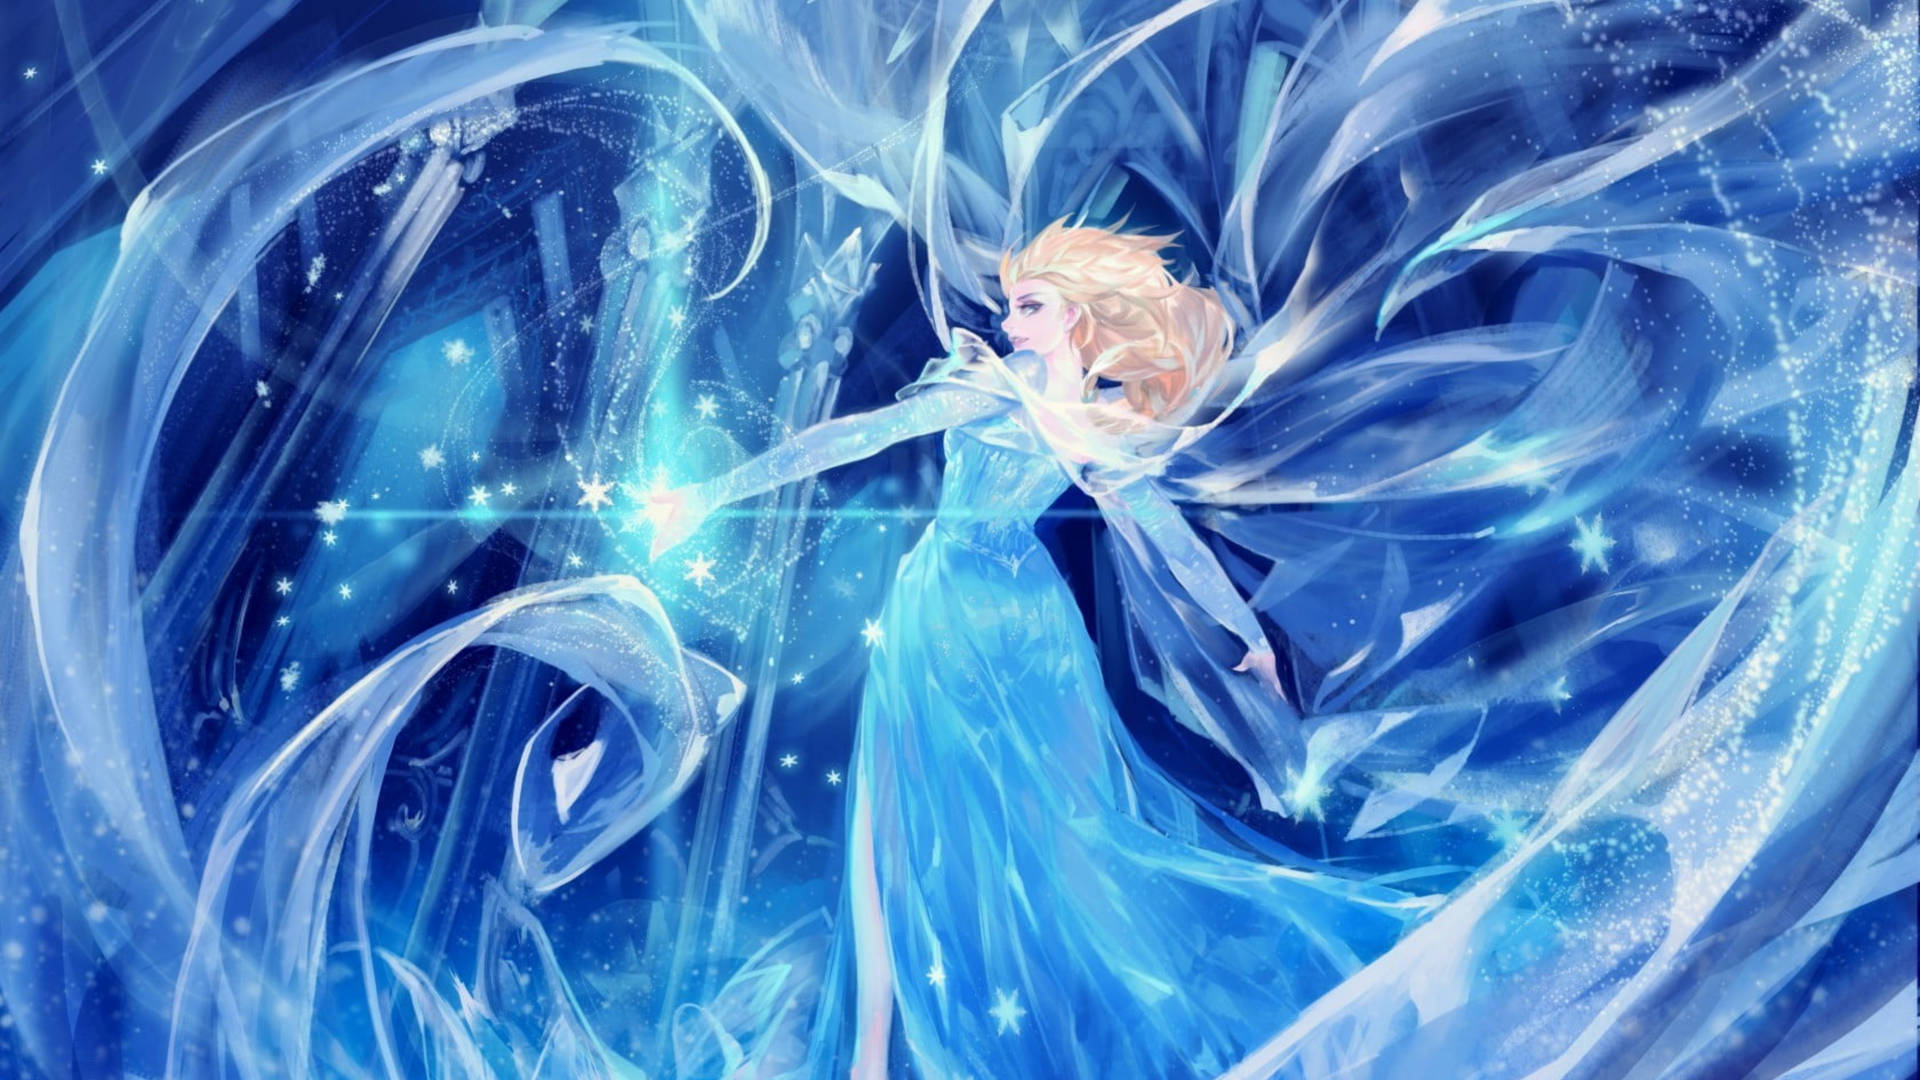 Frozen Elsa Anime Style Fanart Wallpaper